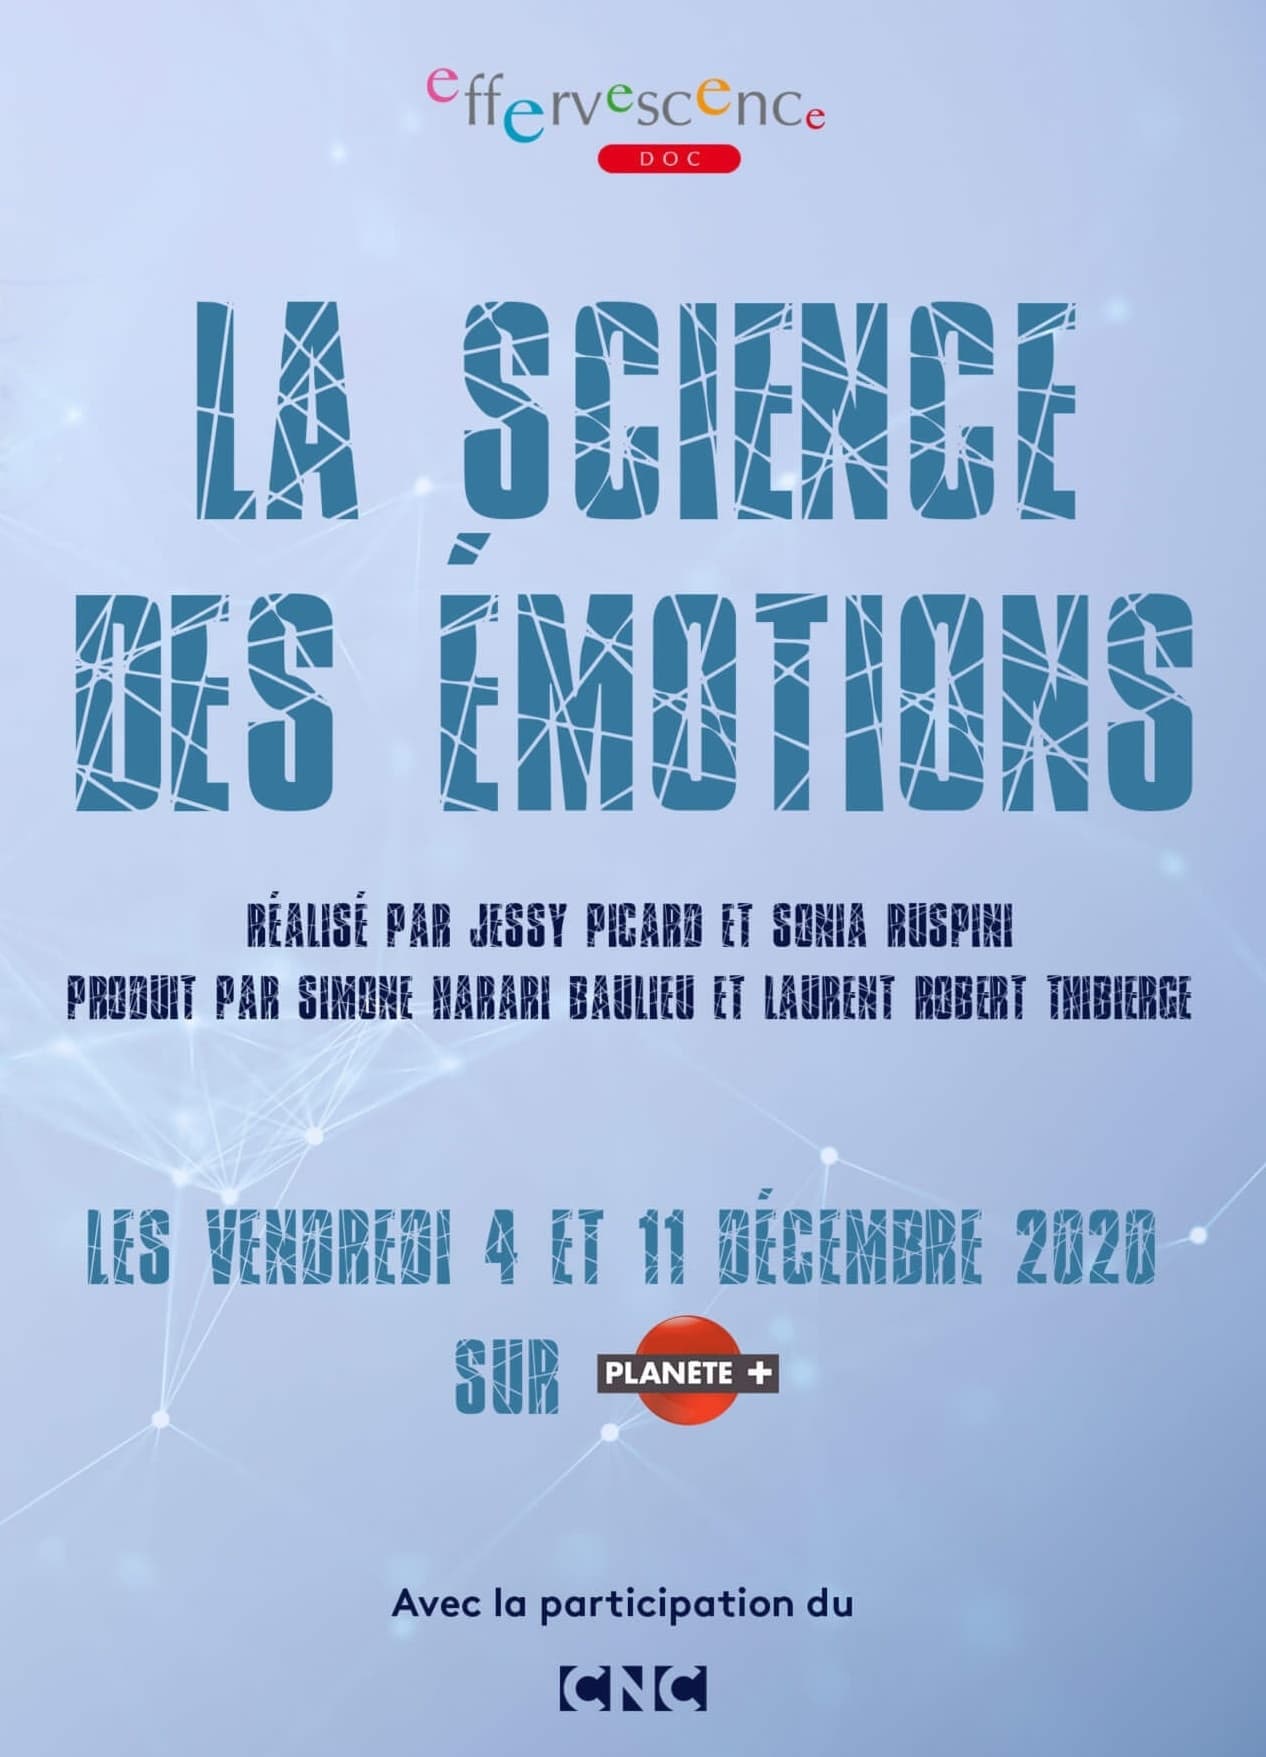 La science des émotions (2020)